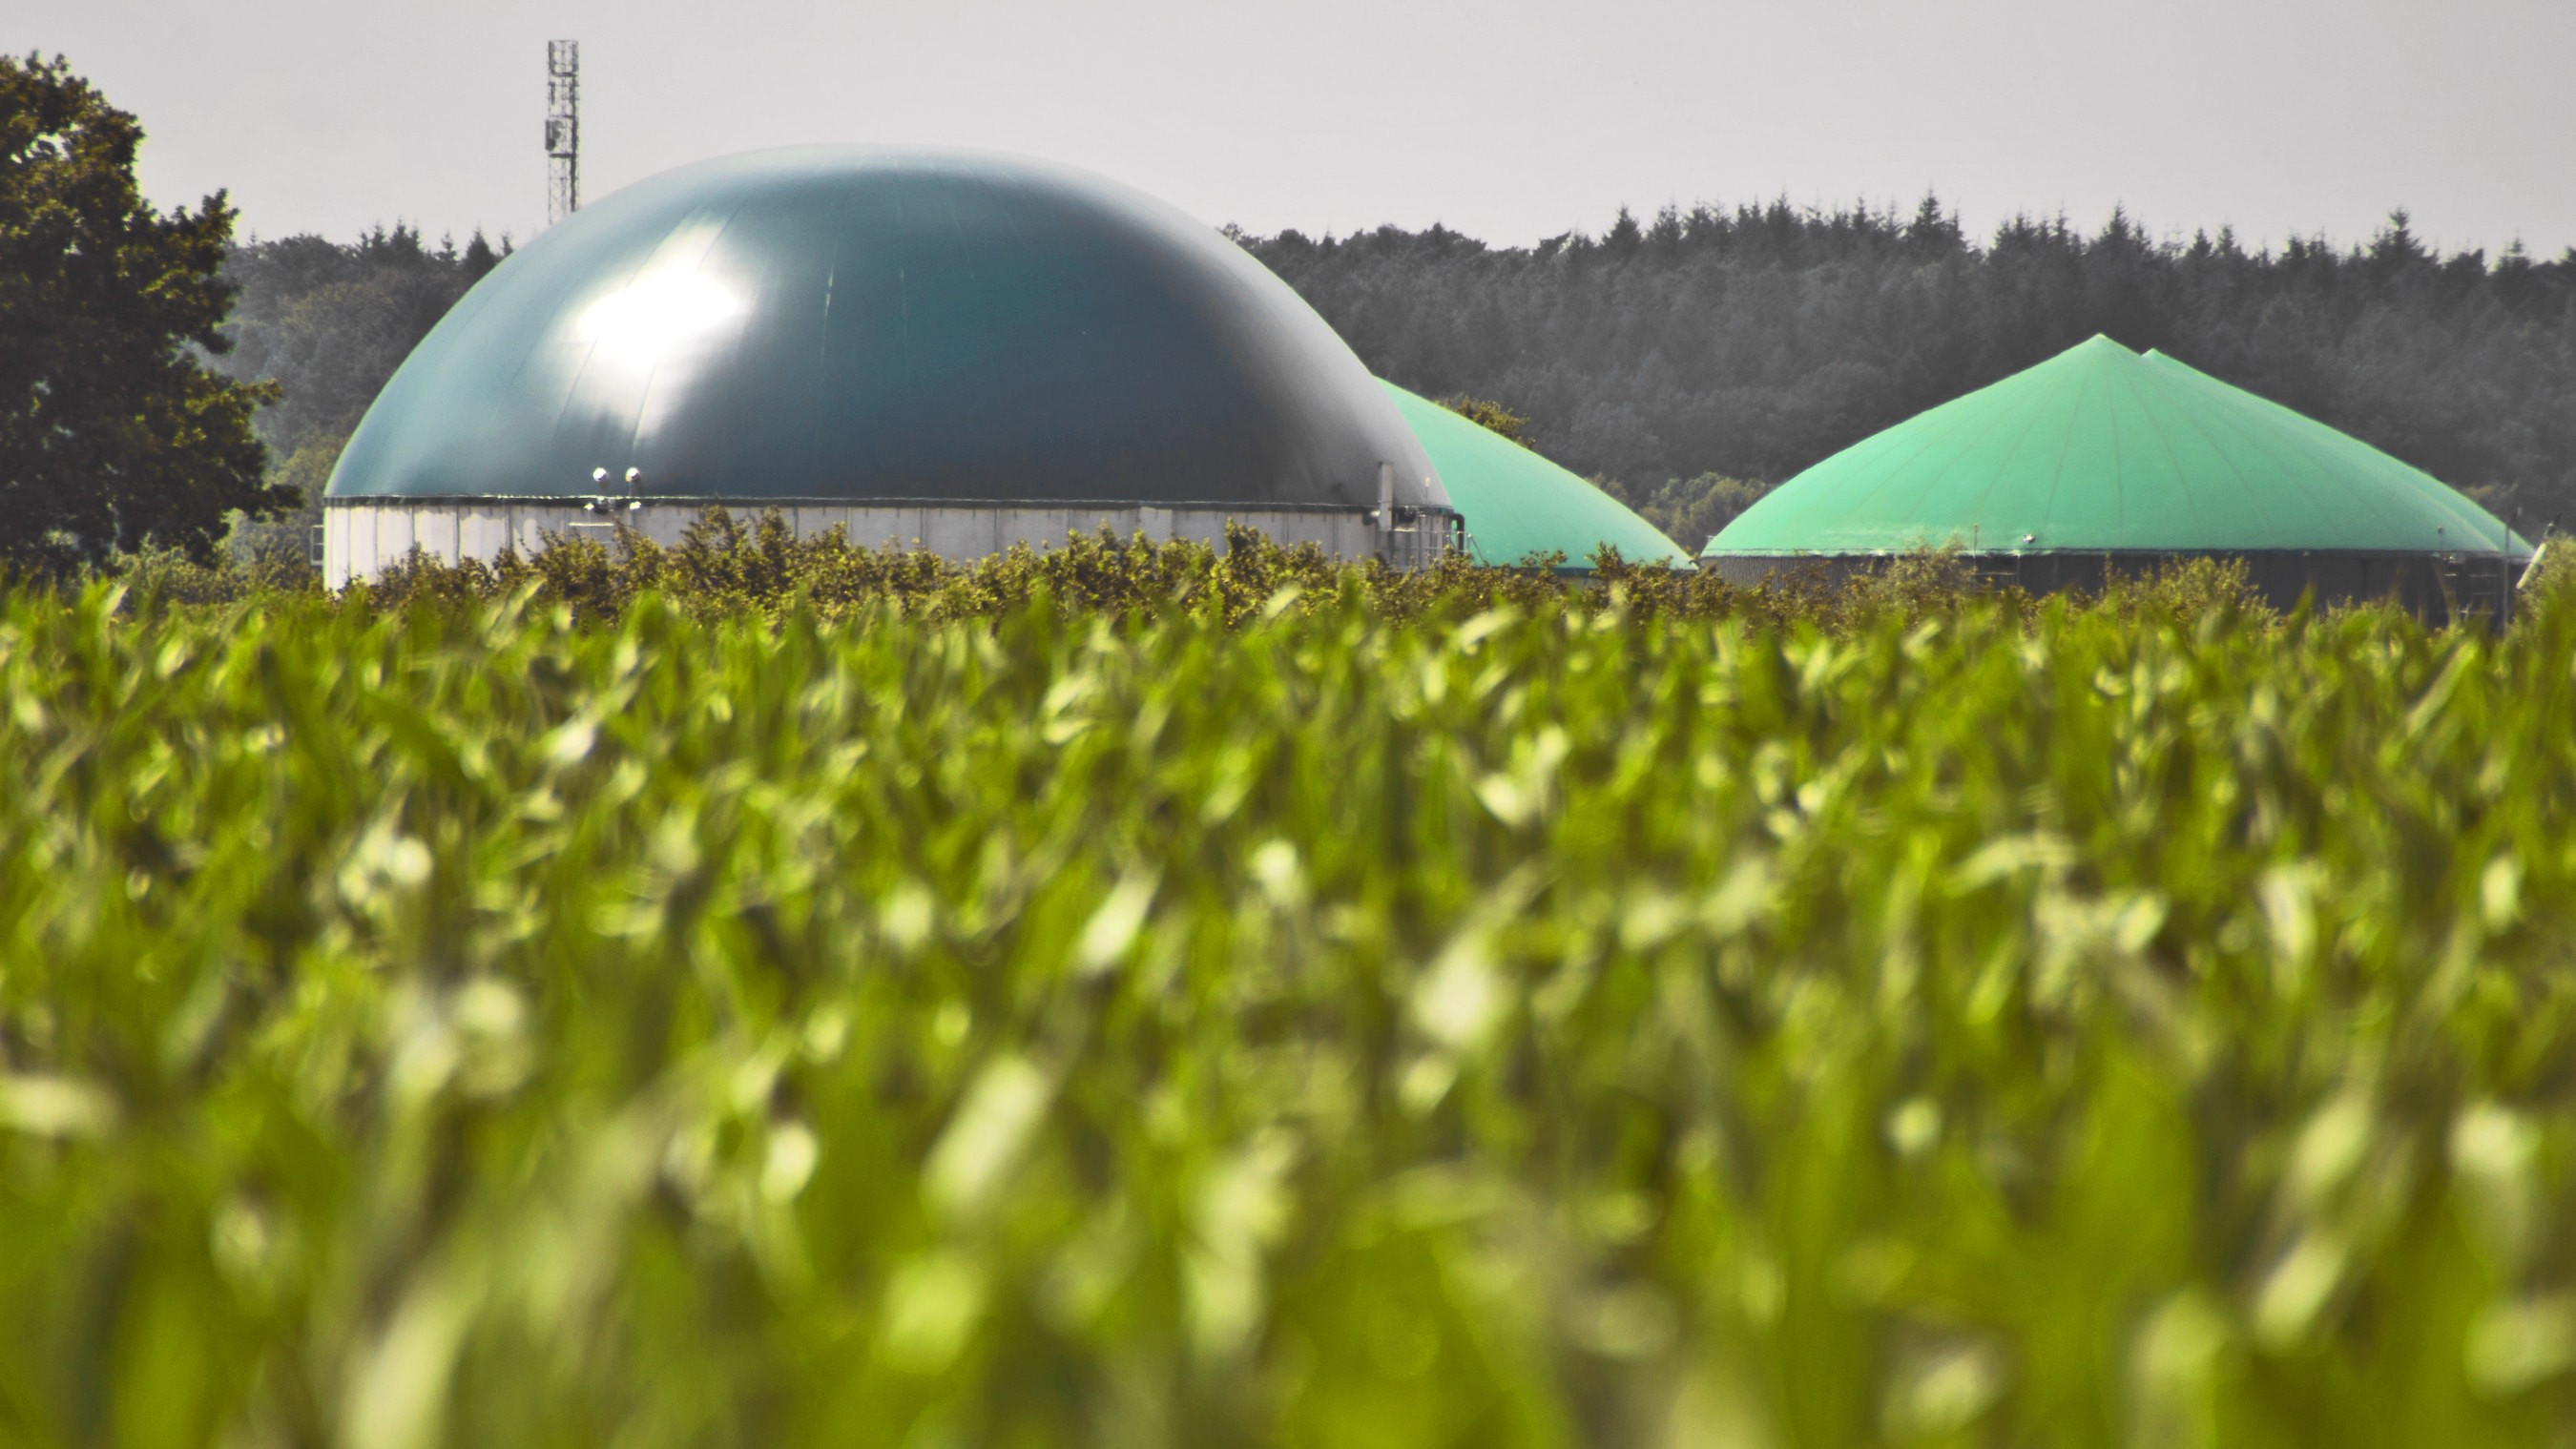 Et biogasanlæg ses i baggrunden - forgrunden viser en majsmark